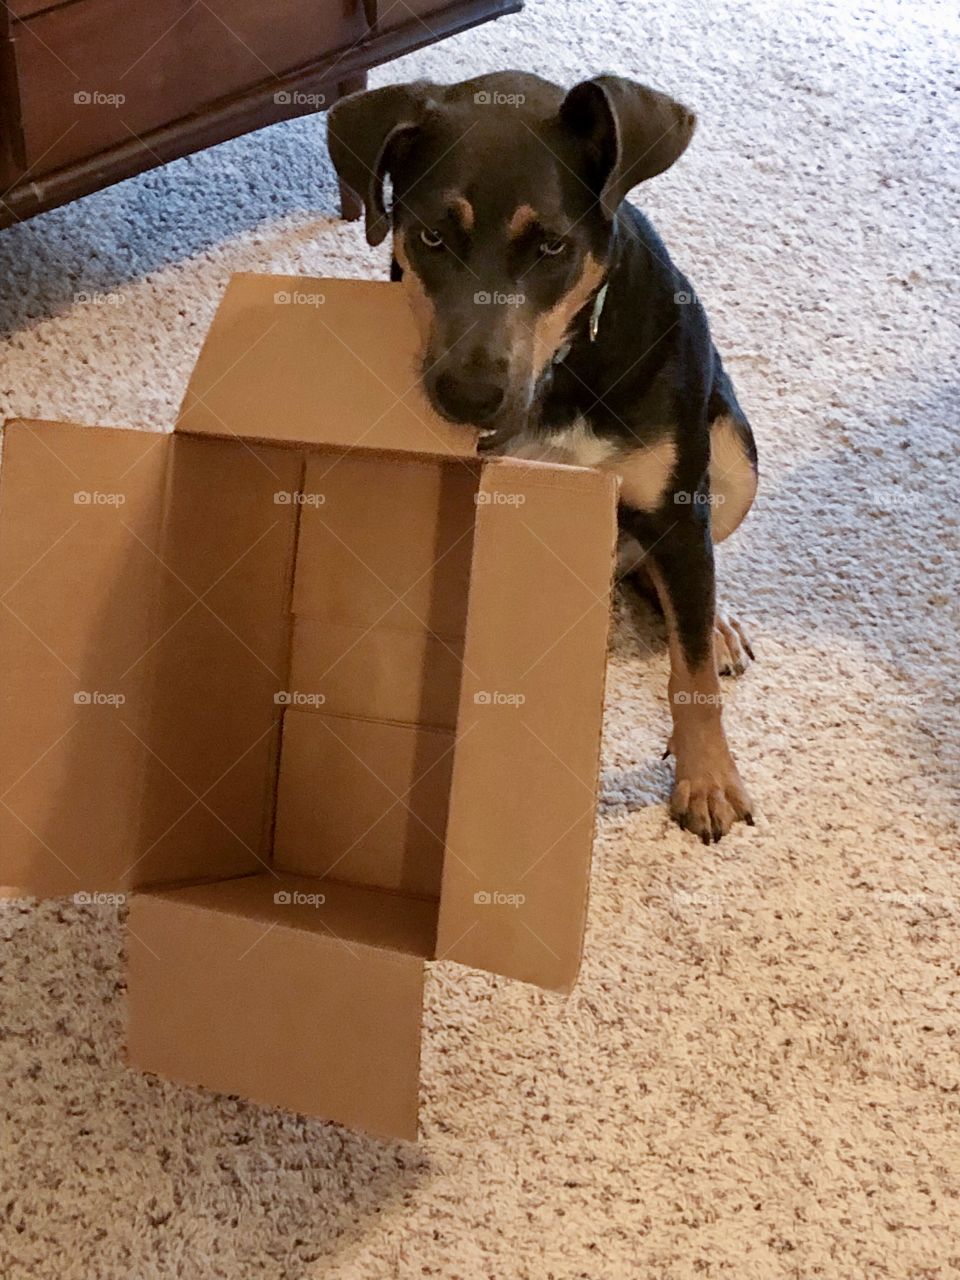 Labrador/hound plays with box